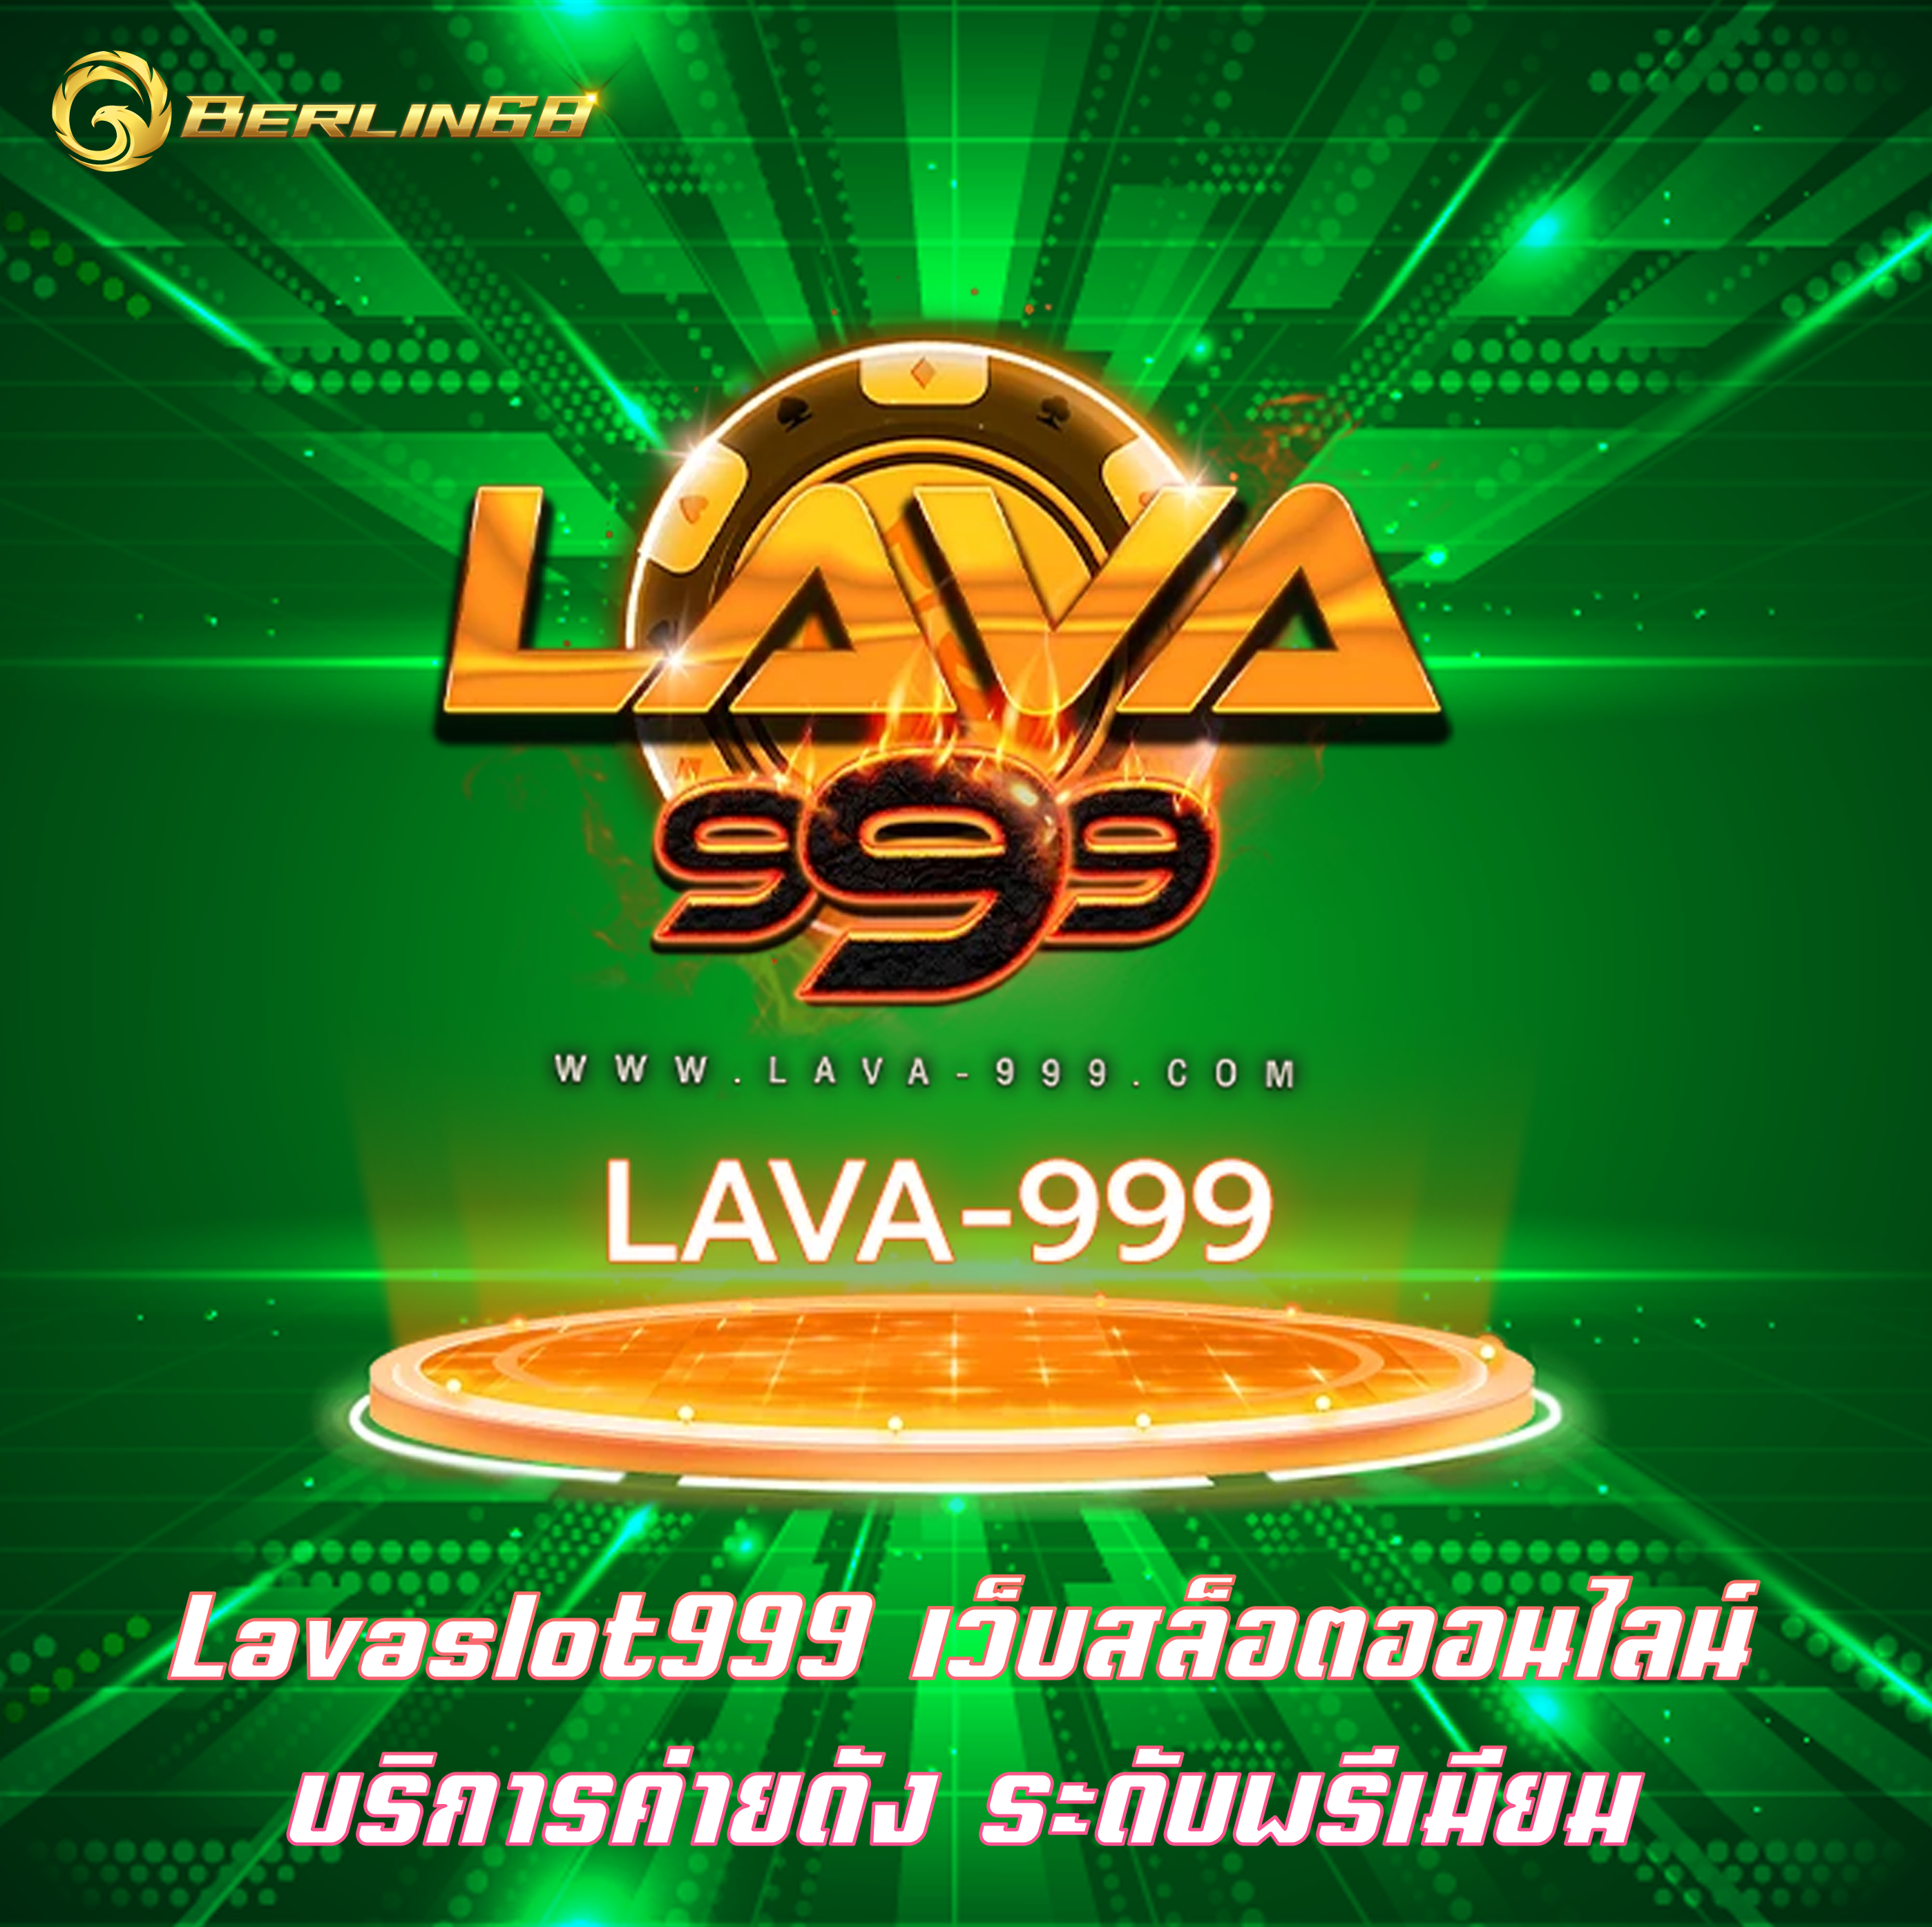 Lavaslot999 เว็บสล็อตออนไลน์ บริการค่ายดัง ระดับพรีเมียม